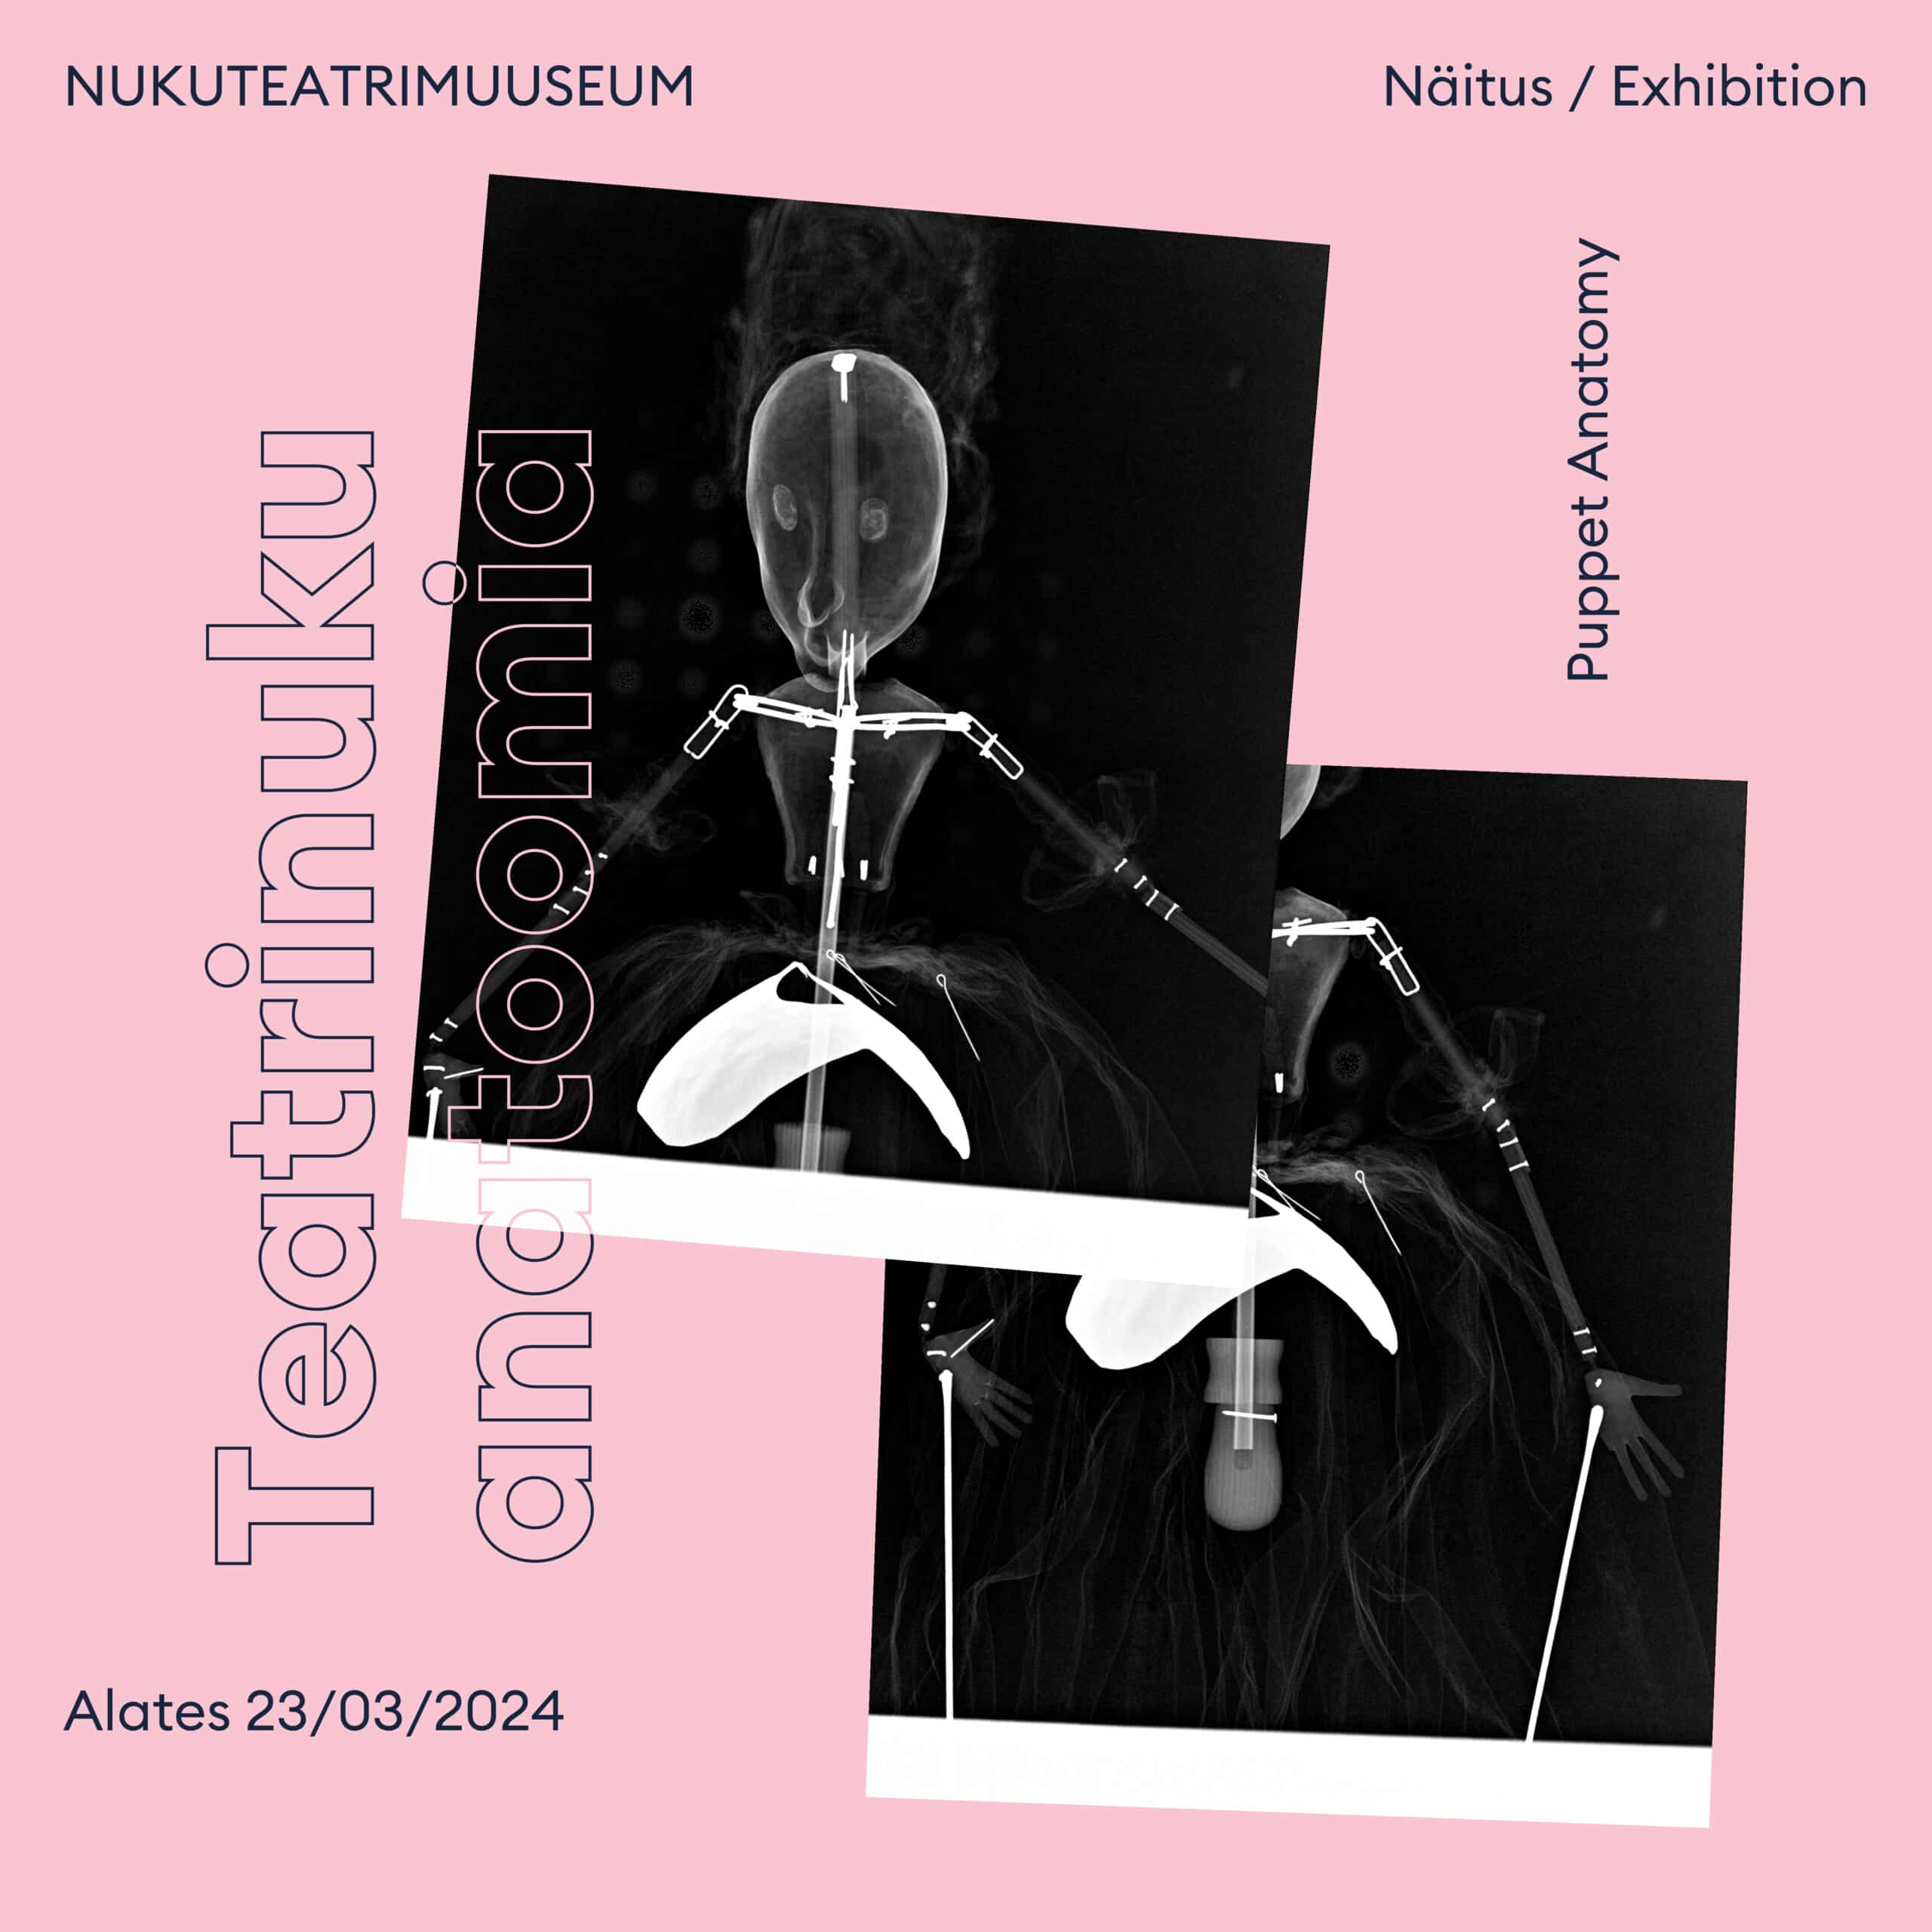 Pildil on roosal taustal kaks mustvalget röntgenfotot nukust, ülaservas on kirjas "NUKUTEATRIMUUSEUM / Näitus / Exhibition" ning allpool "Teatrinuku anatoomia / alates 23/03/2024".